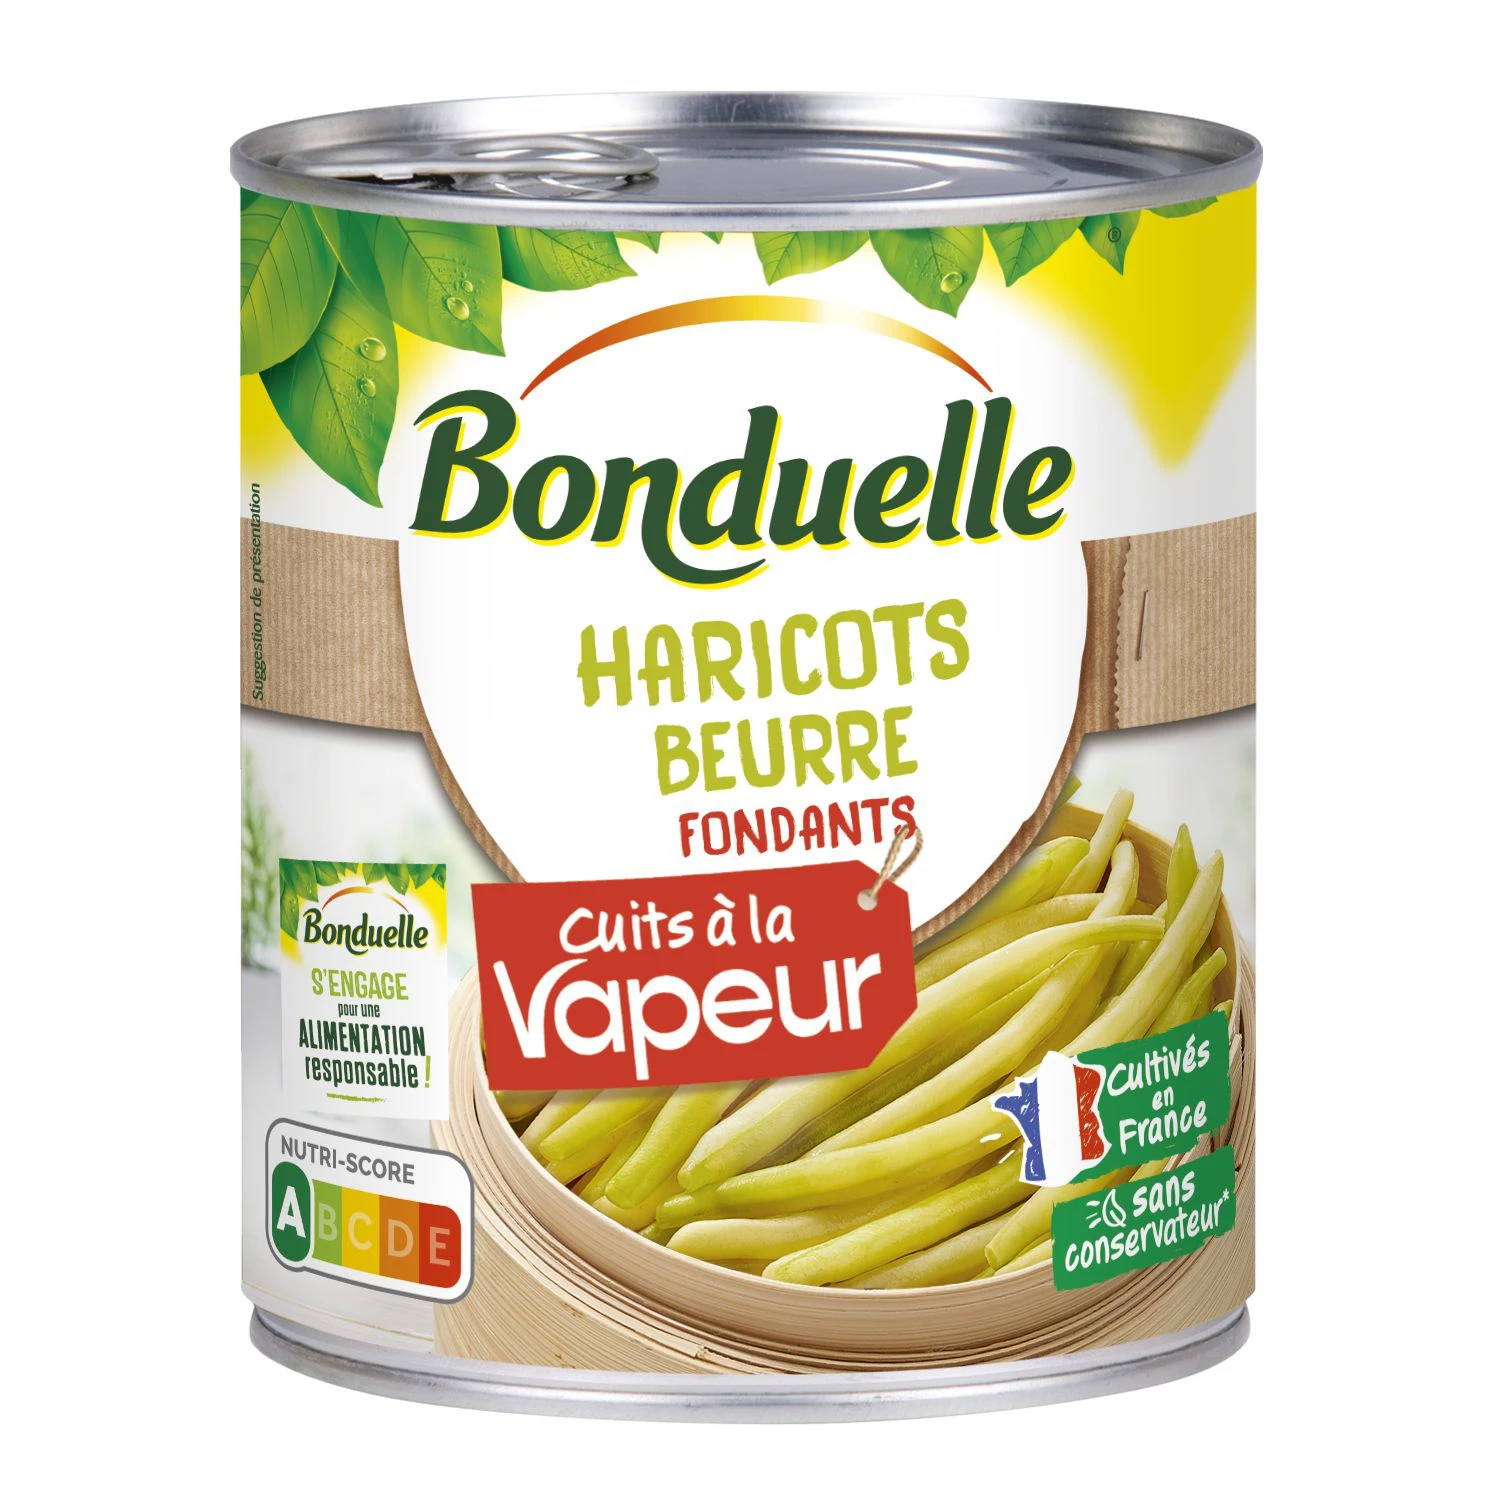 Haricots Verts et Beurre Cuits à La Vapeur; 590g - BONDUELLE